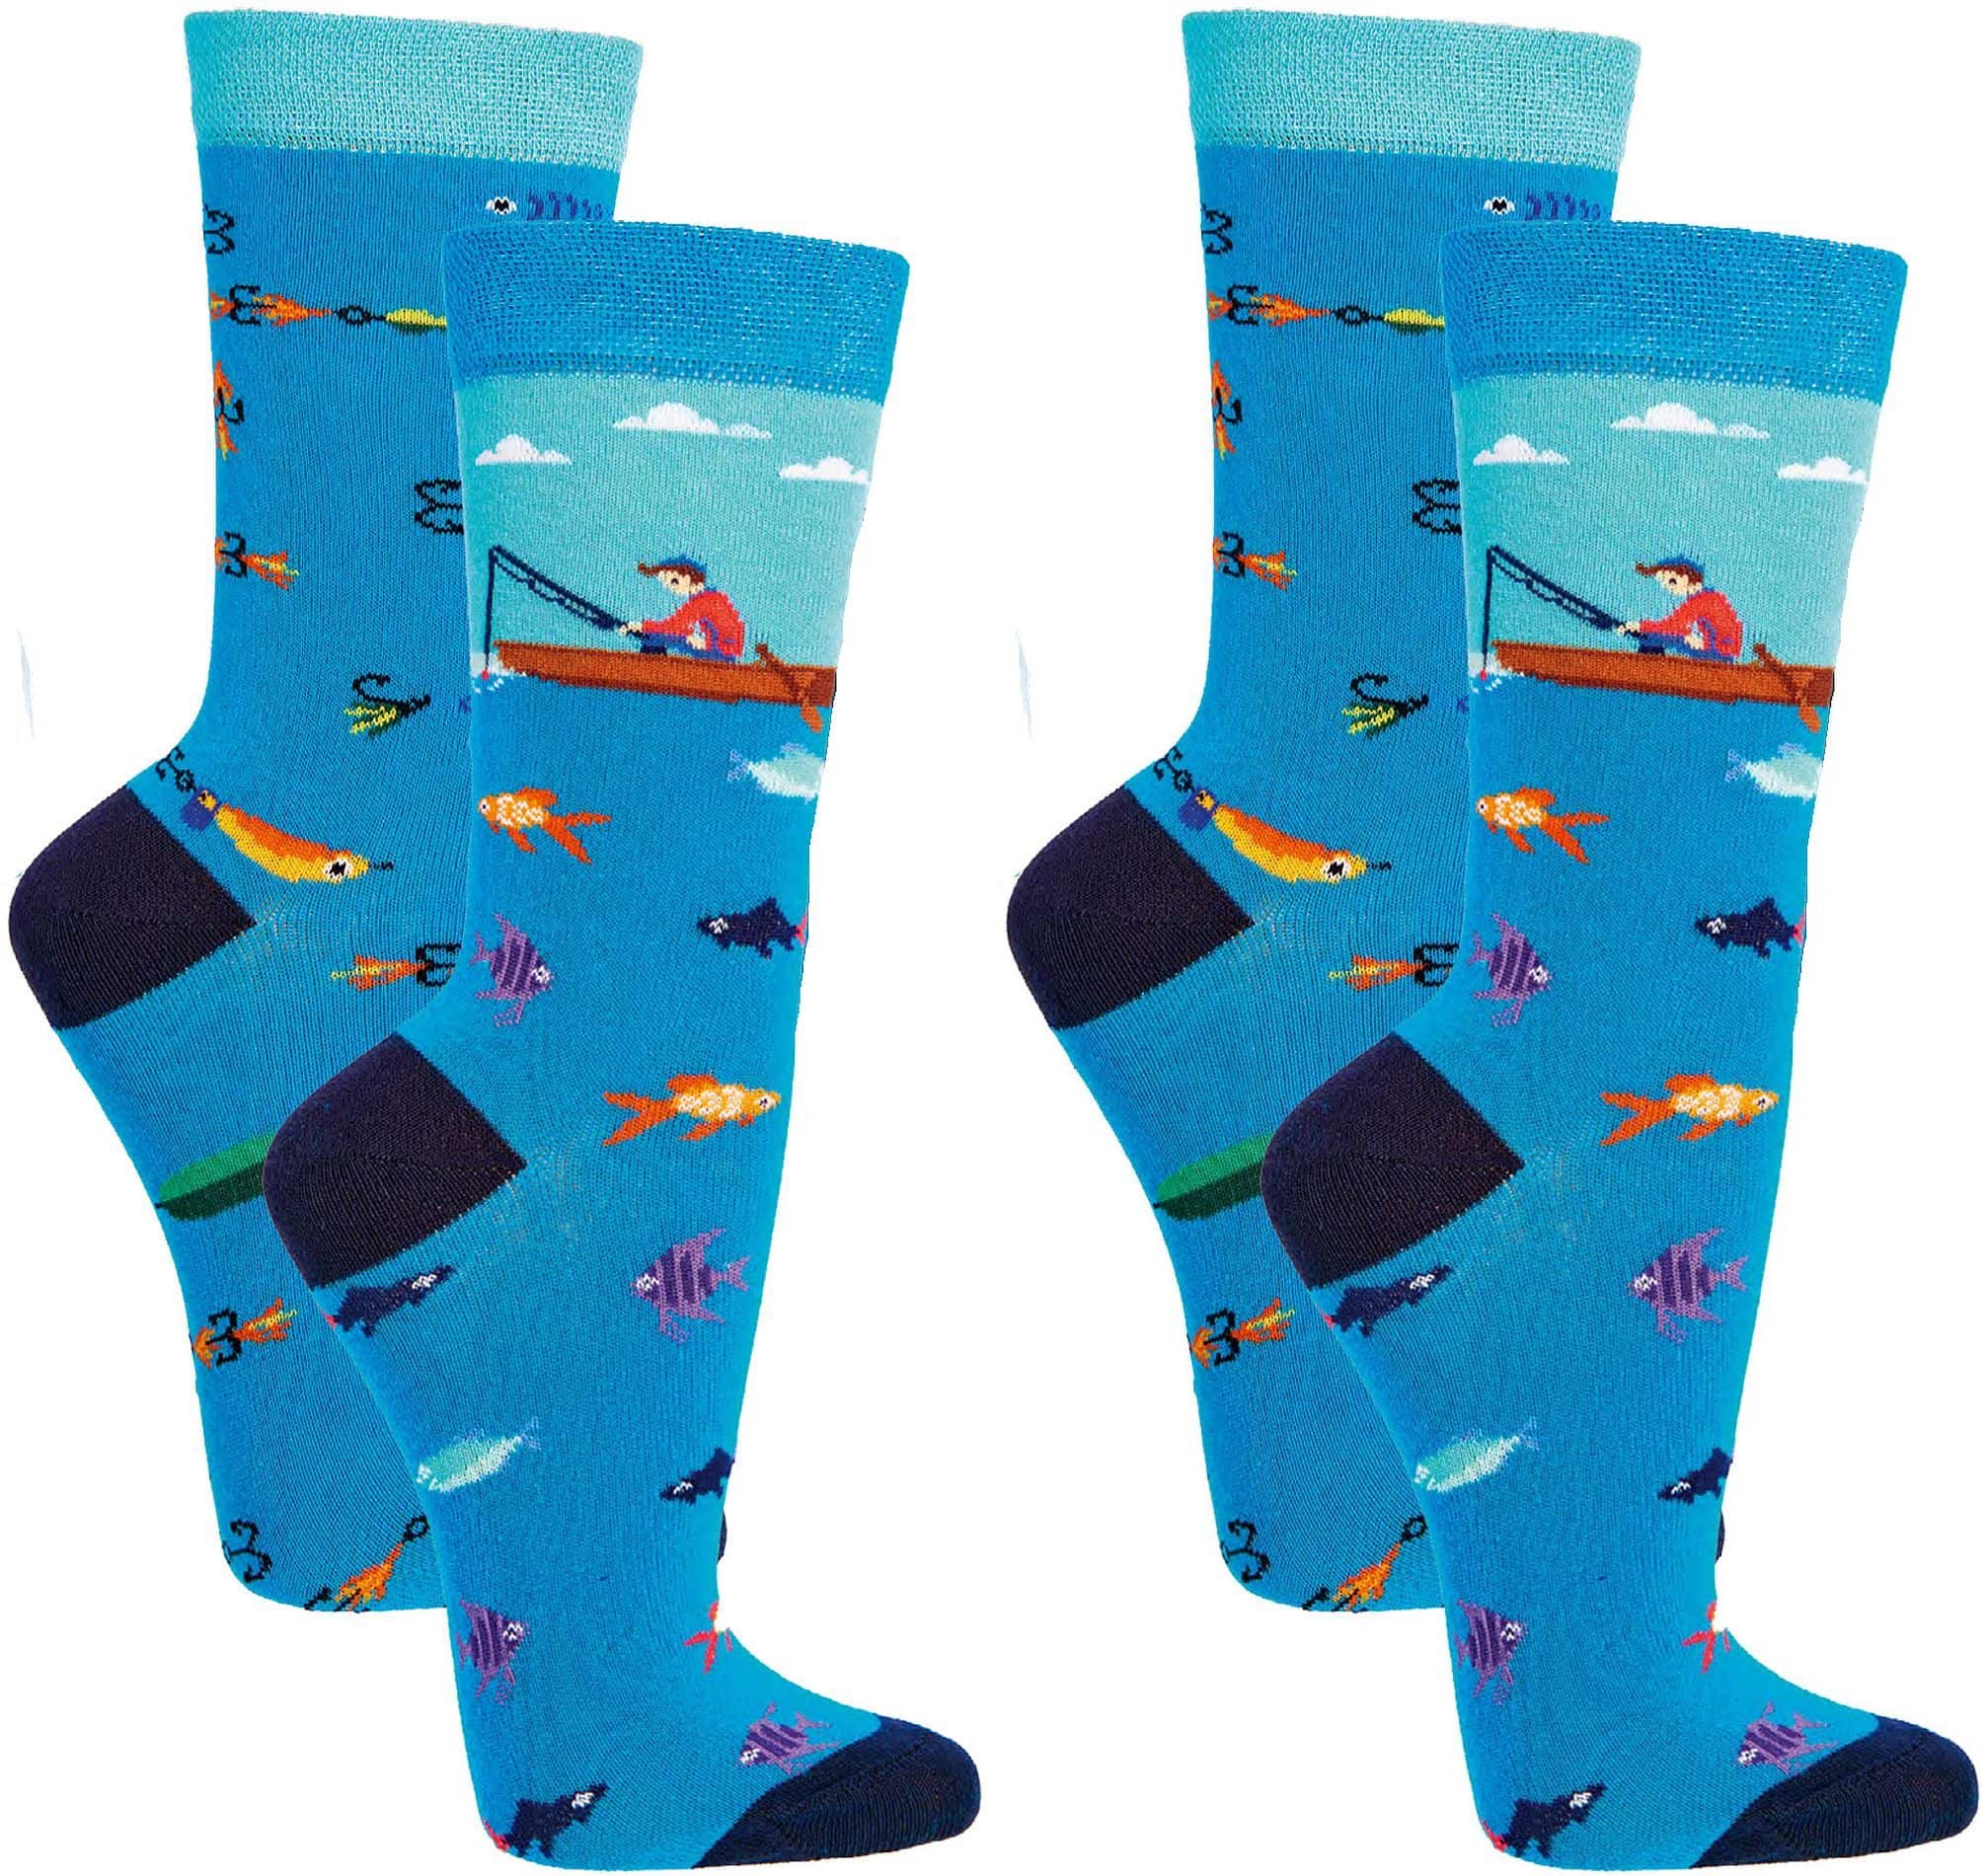 ANGLER Witzige Socken Lustige Dessin - SOCKS 4 FUN - Mehr Spaß im Alltag für Teenager, Damen und Herren, 2 Paar